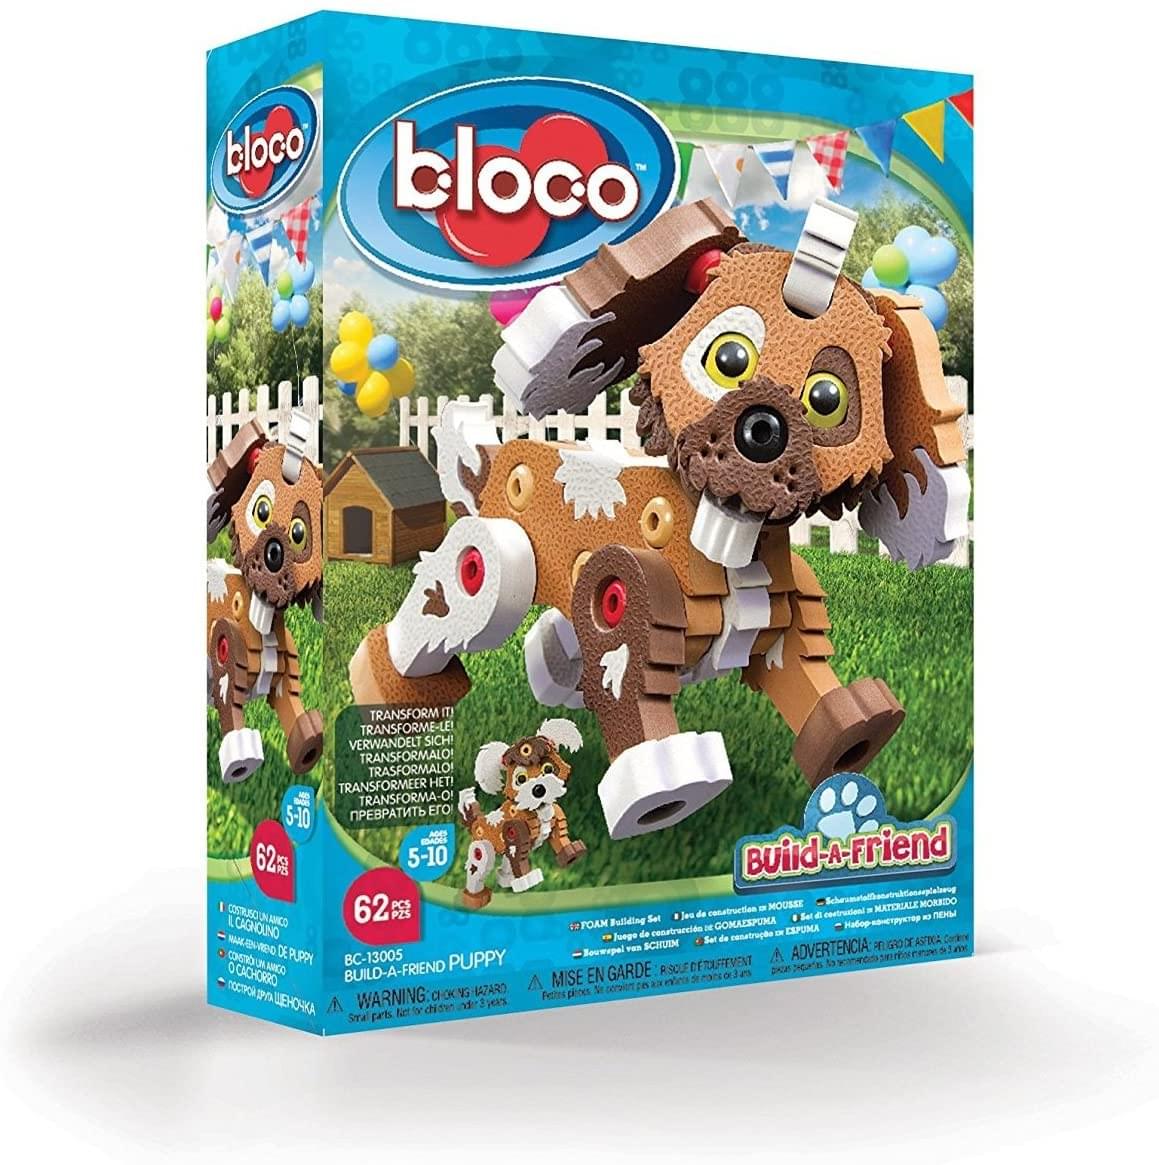 Bloco Build-a-Friend 62 Piece Construction Set | Puppy